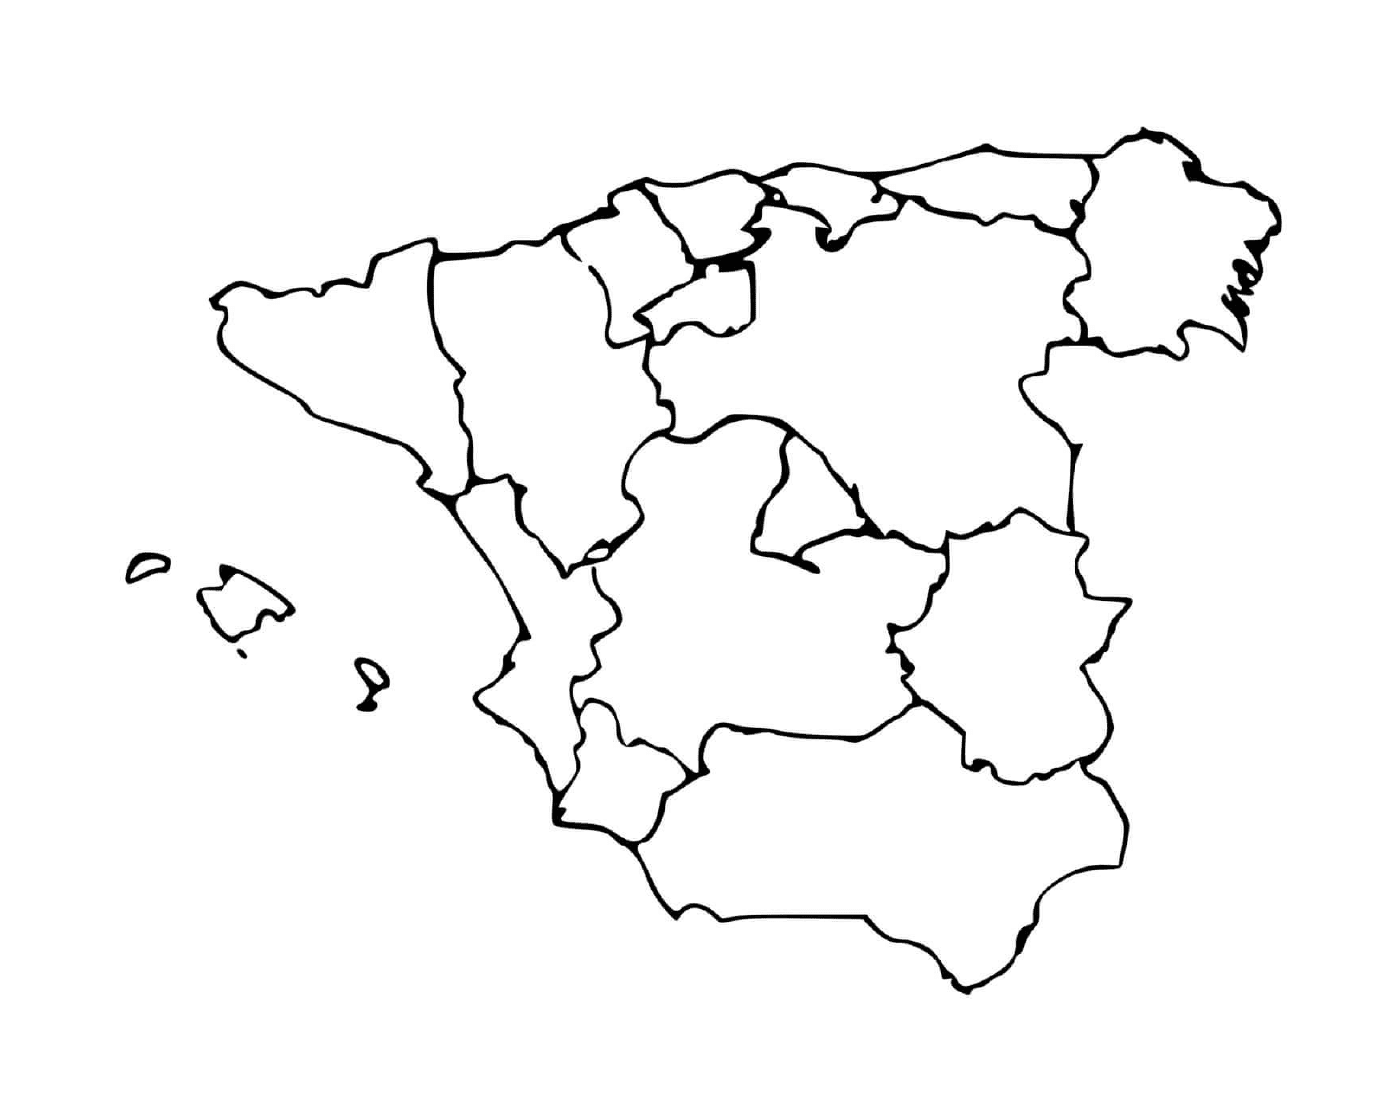  Mapa detalhado da Espanha 